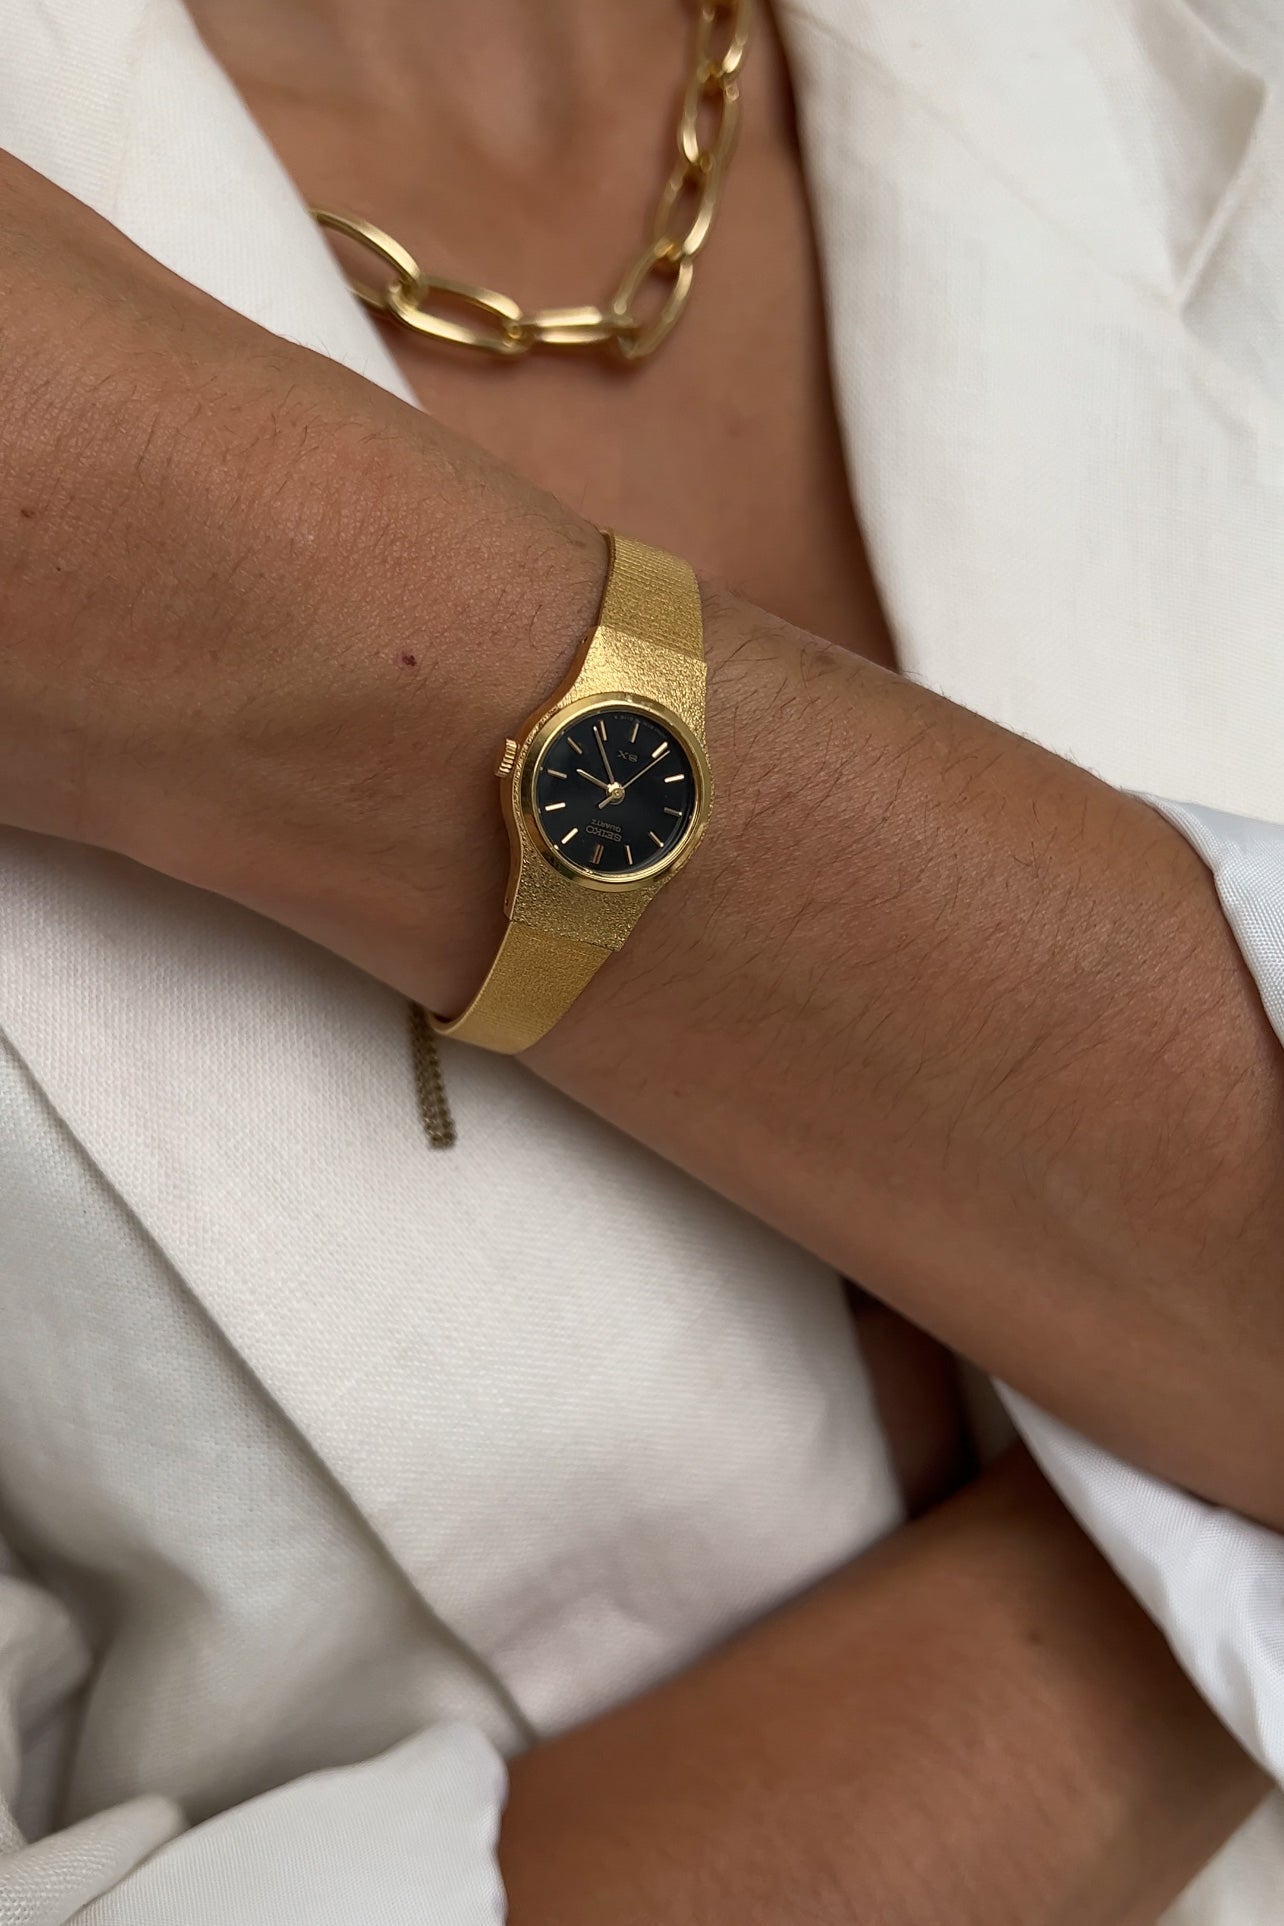 Vintage Gold Tone Seiko Quartz Watch